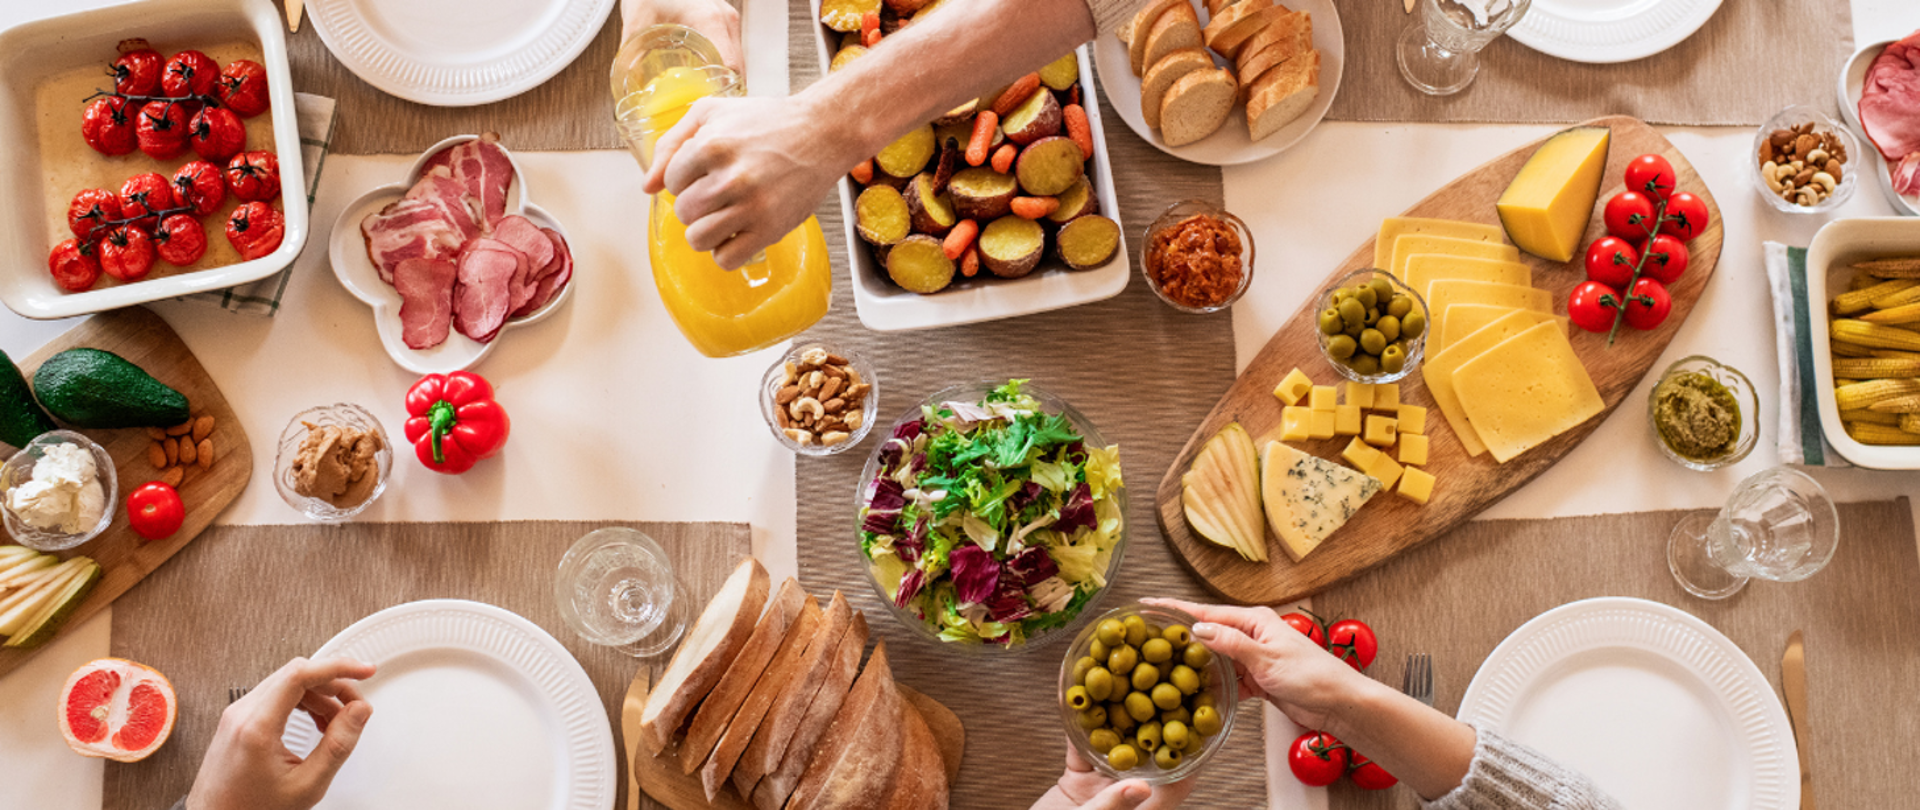 Zdjęcie przestawia stół, znajdują się na nim talerze, sztućce, szklanki oraz żywność (oliwki, sałata, pomidory, papryka, chleb, bagietka, sok, wędlina, orzechy). 